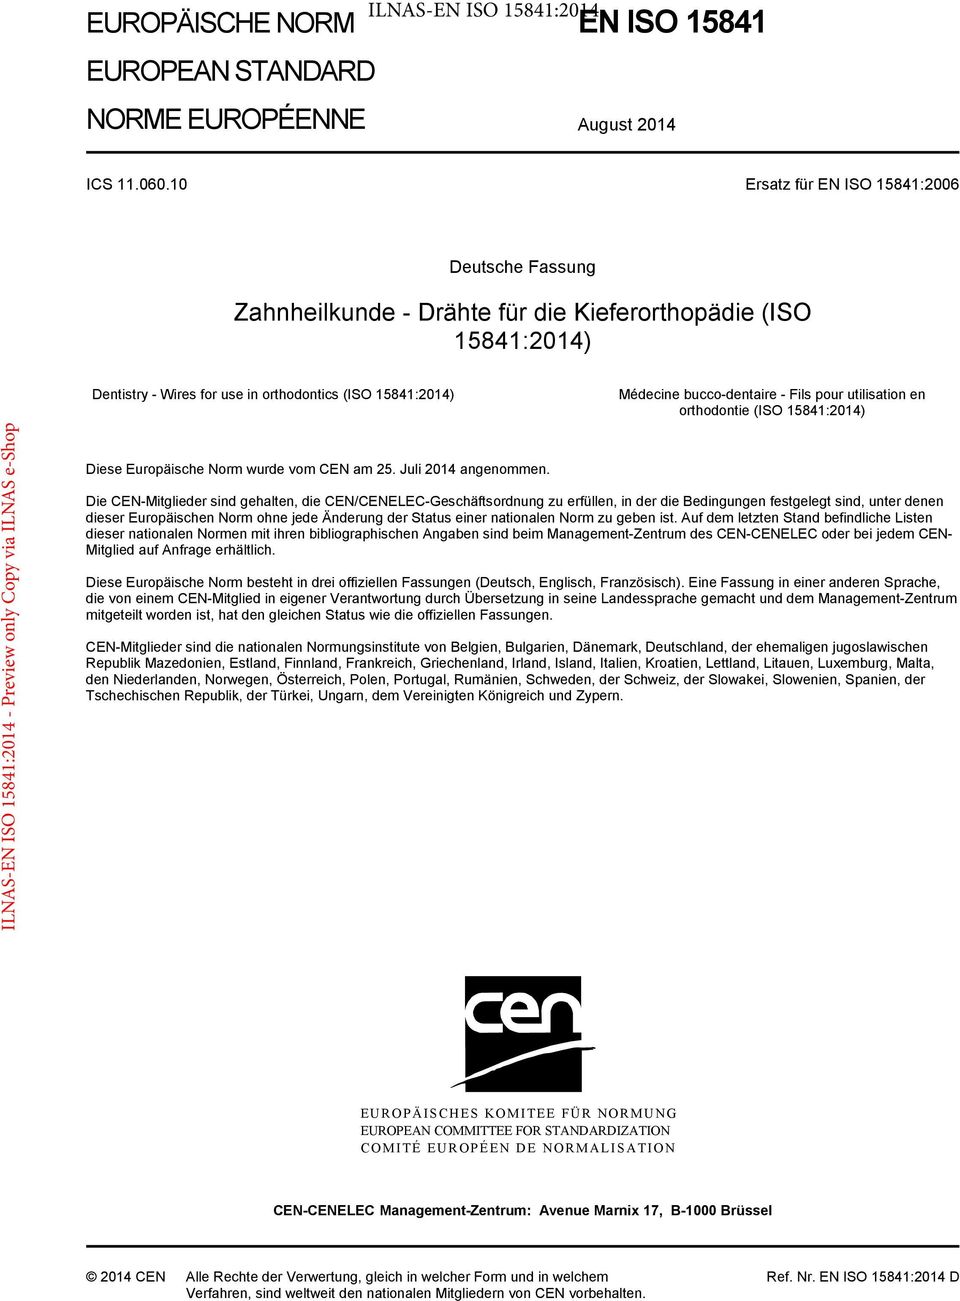 Fils pour utilisation en orthodontie (ISO 15841:2014) Diese Europäische Norm wurde vom CEN am 25. Juli 2014 angenommen.